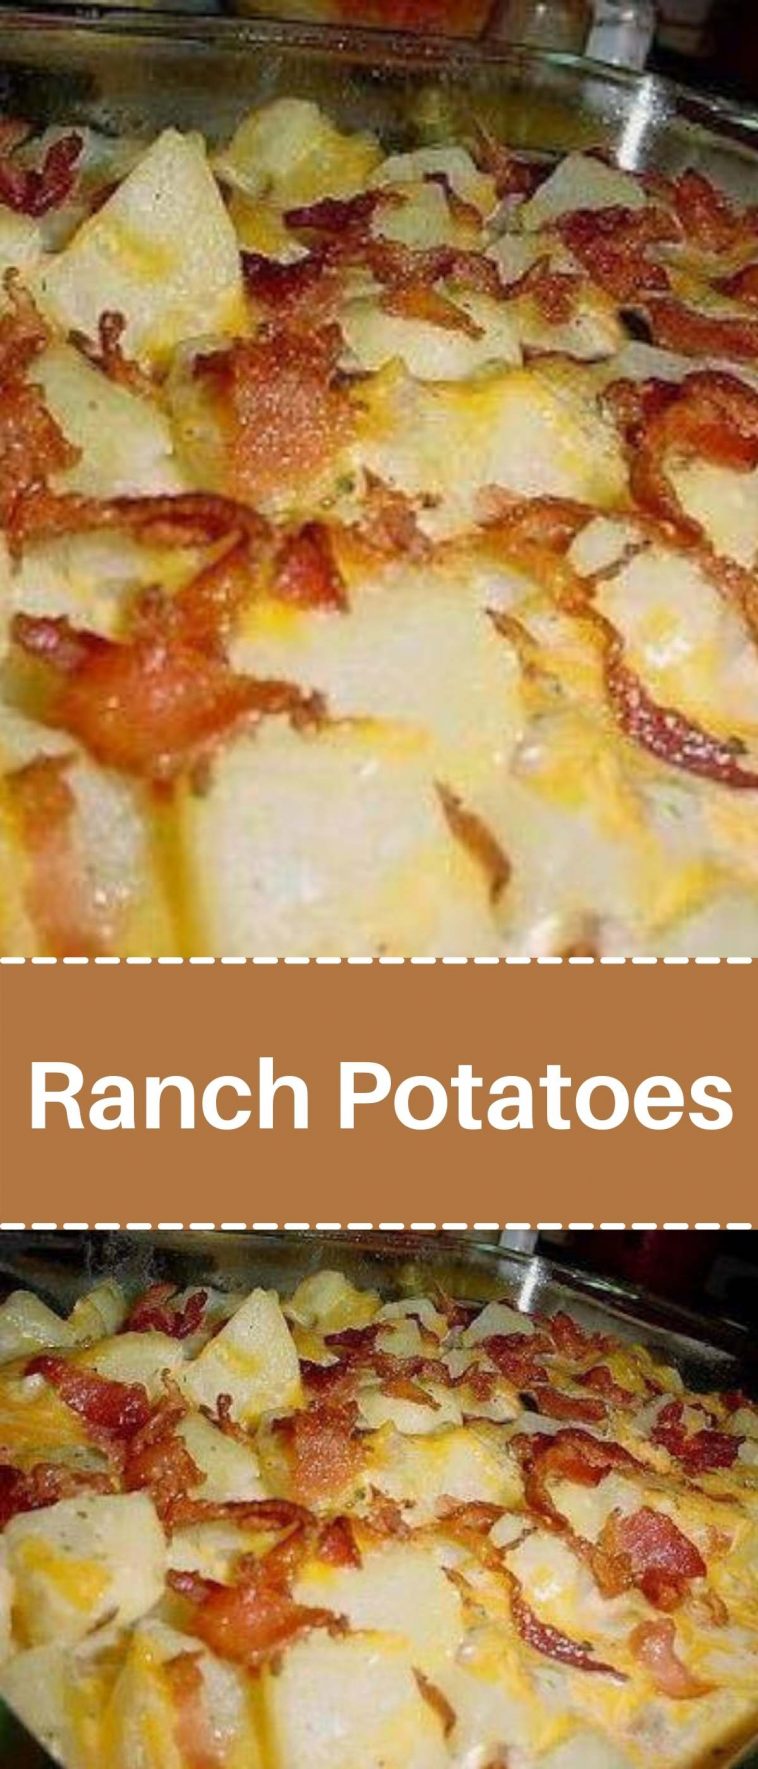 Ranch Potatoes